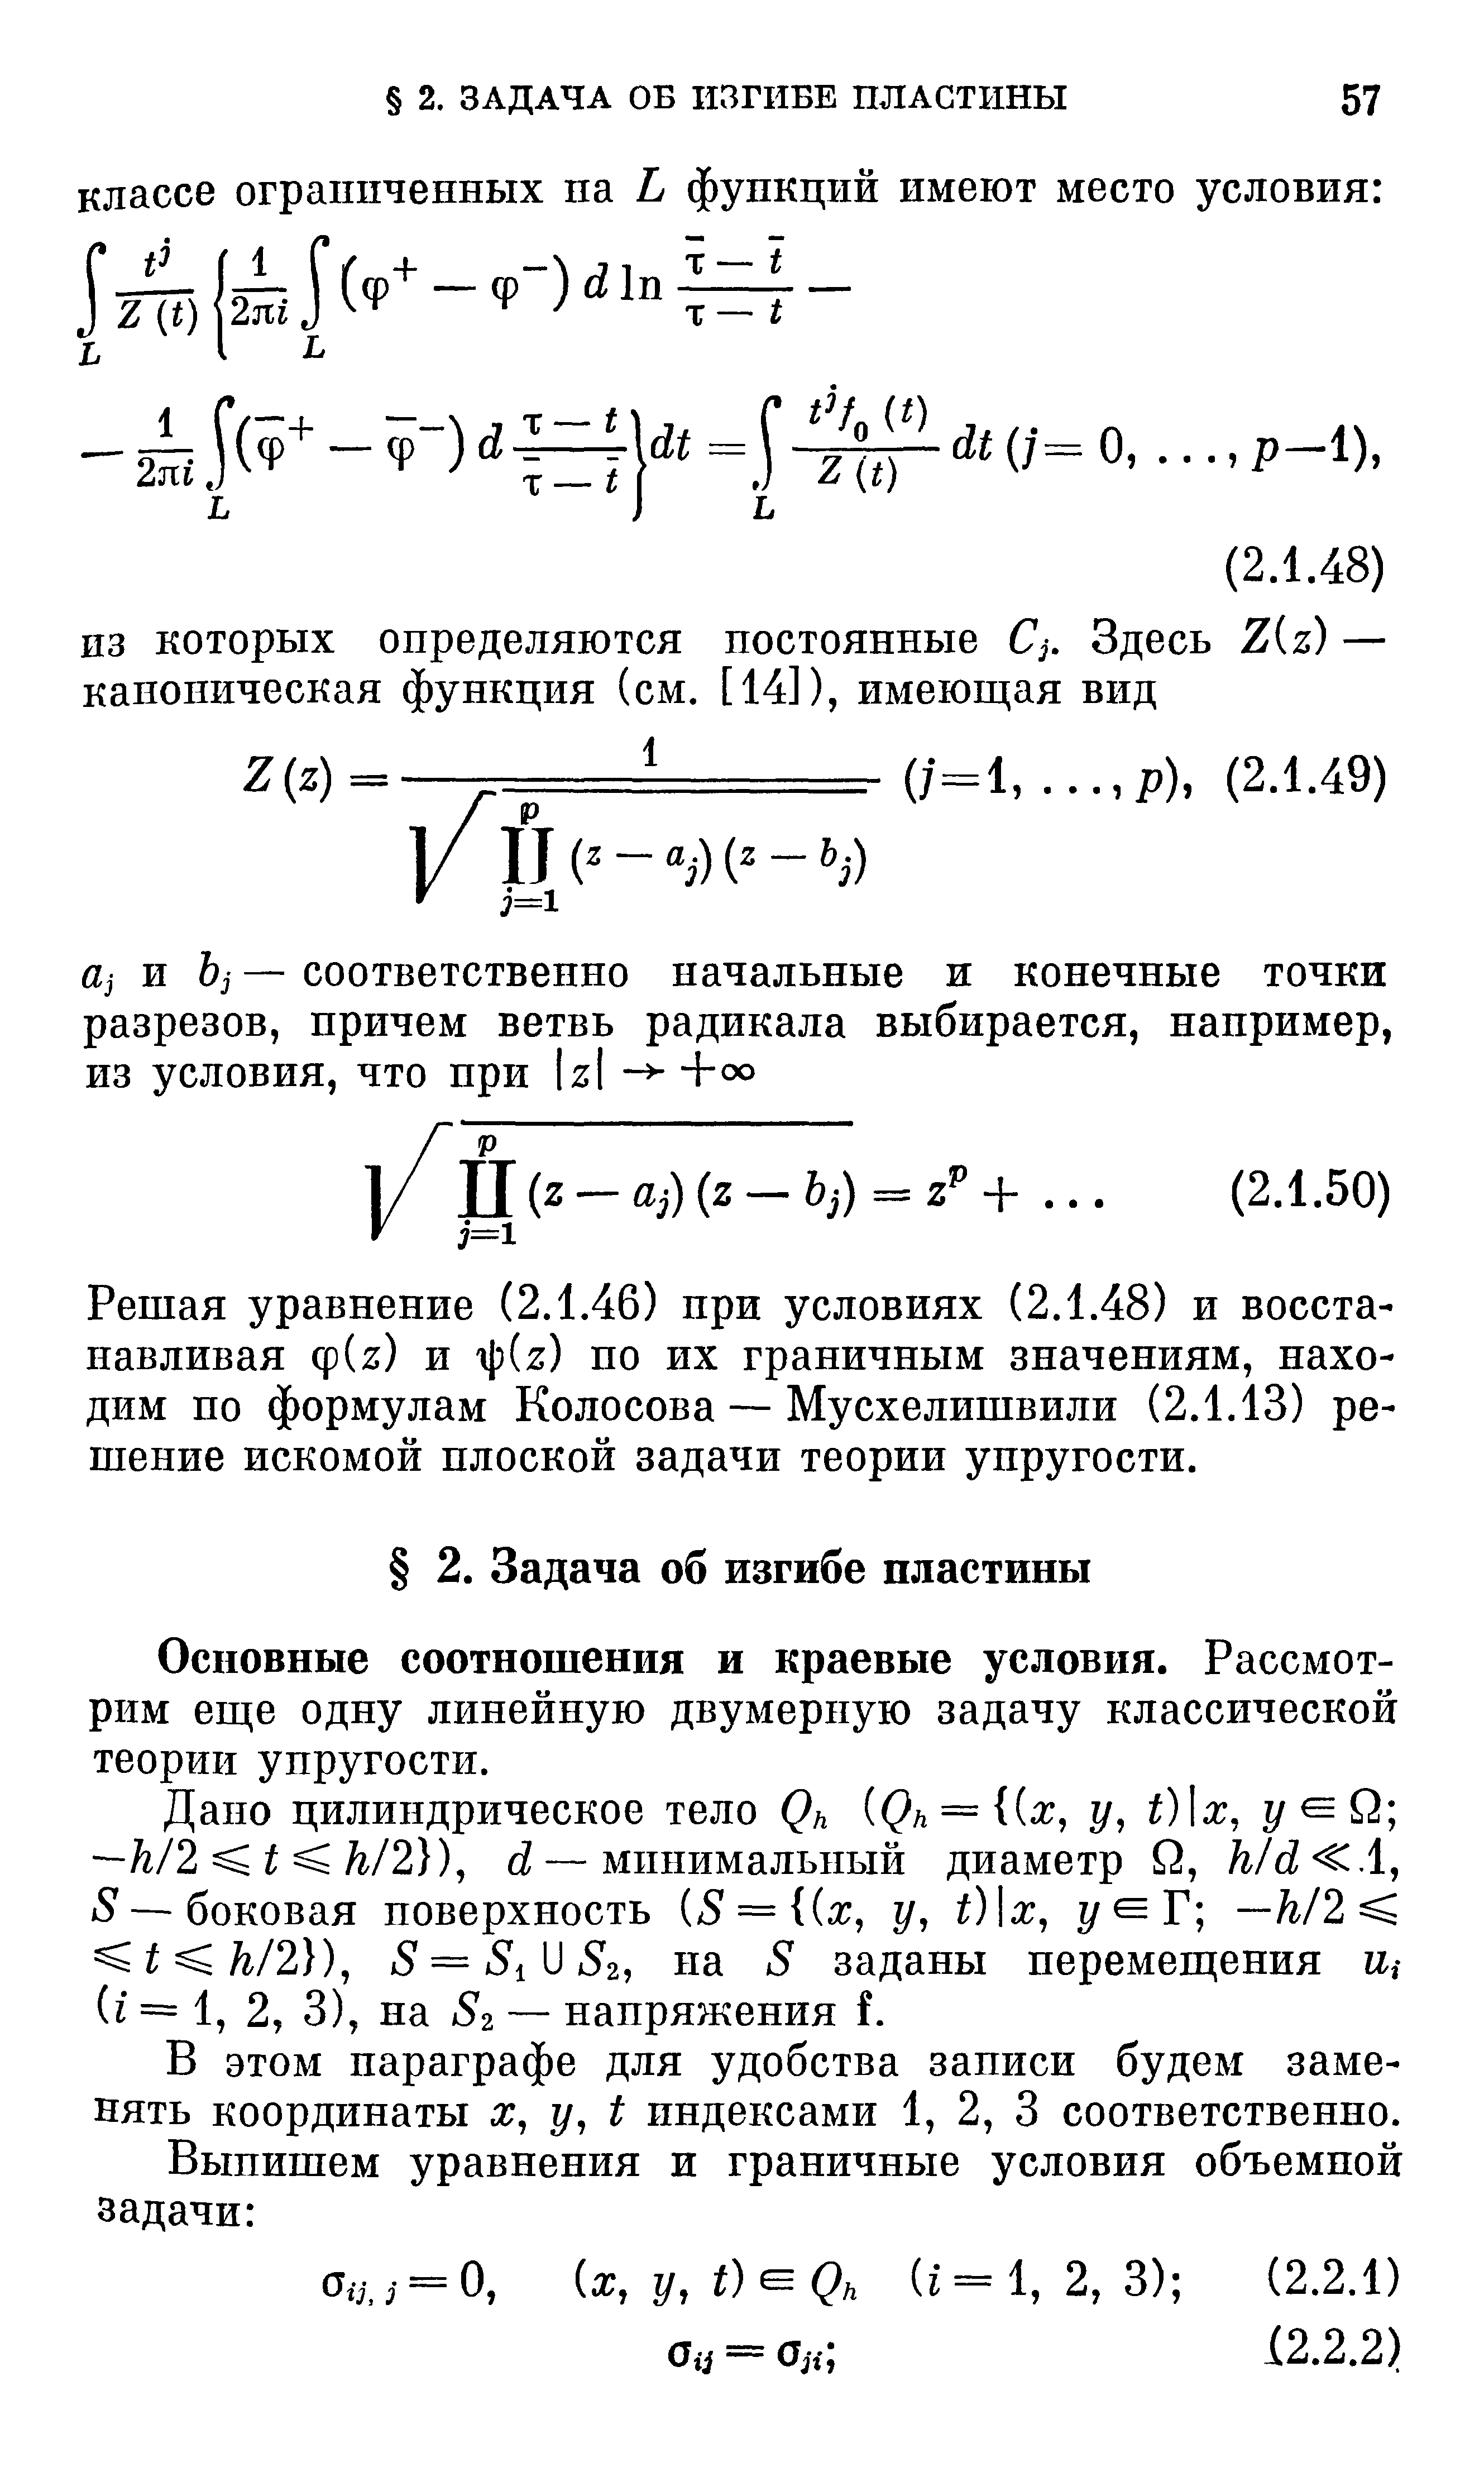 Решая уравнение (2.1.46) при условиях (2.1.48) и восстанавливая ф( з) и p z) по их граничным значениям, находим по формулам Колосова — Мусхелишвили (2.1.13) решение искомой плоской задачи теории упругости.
